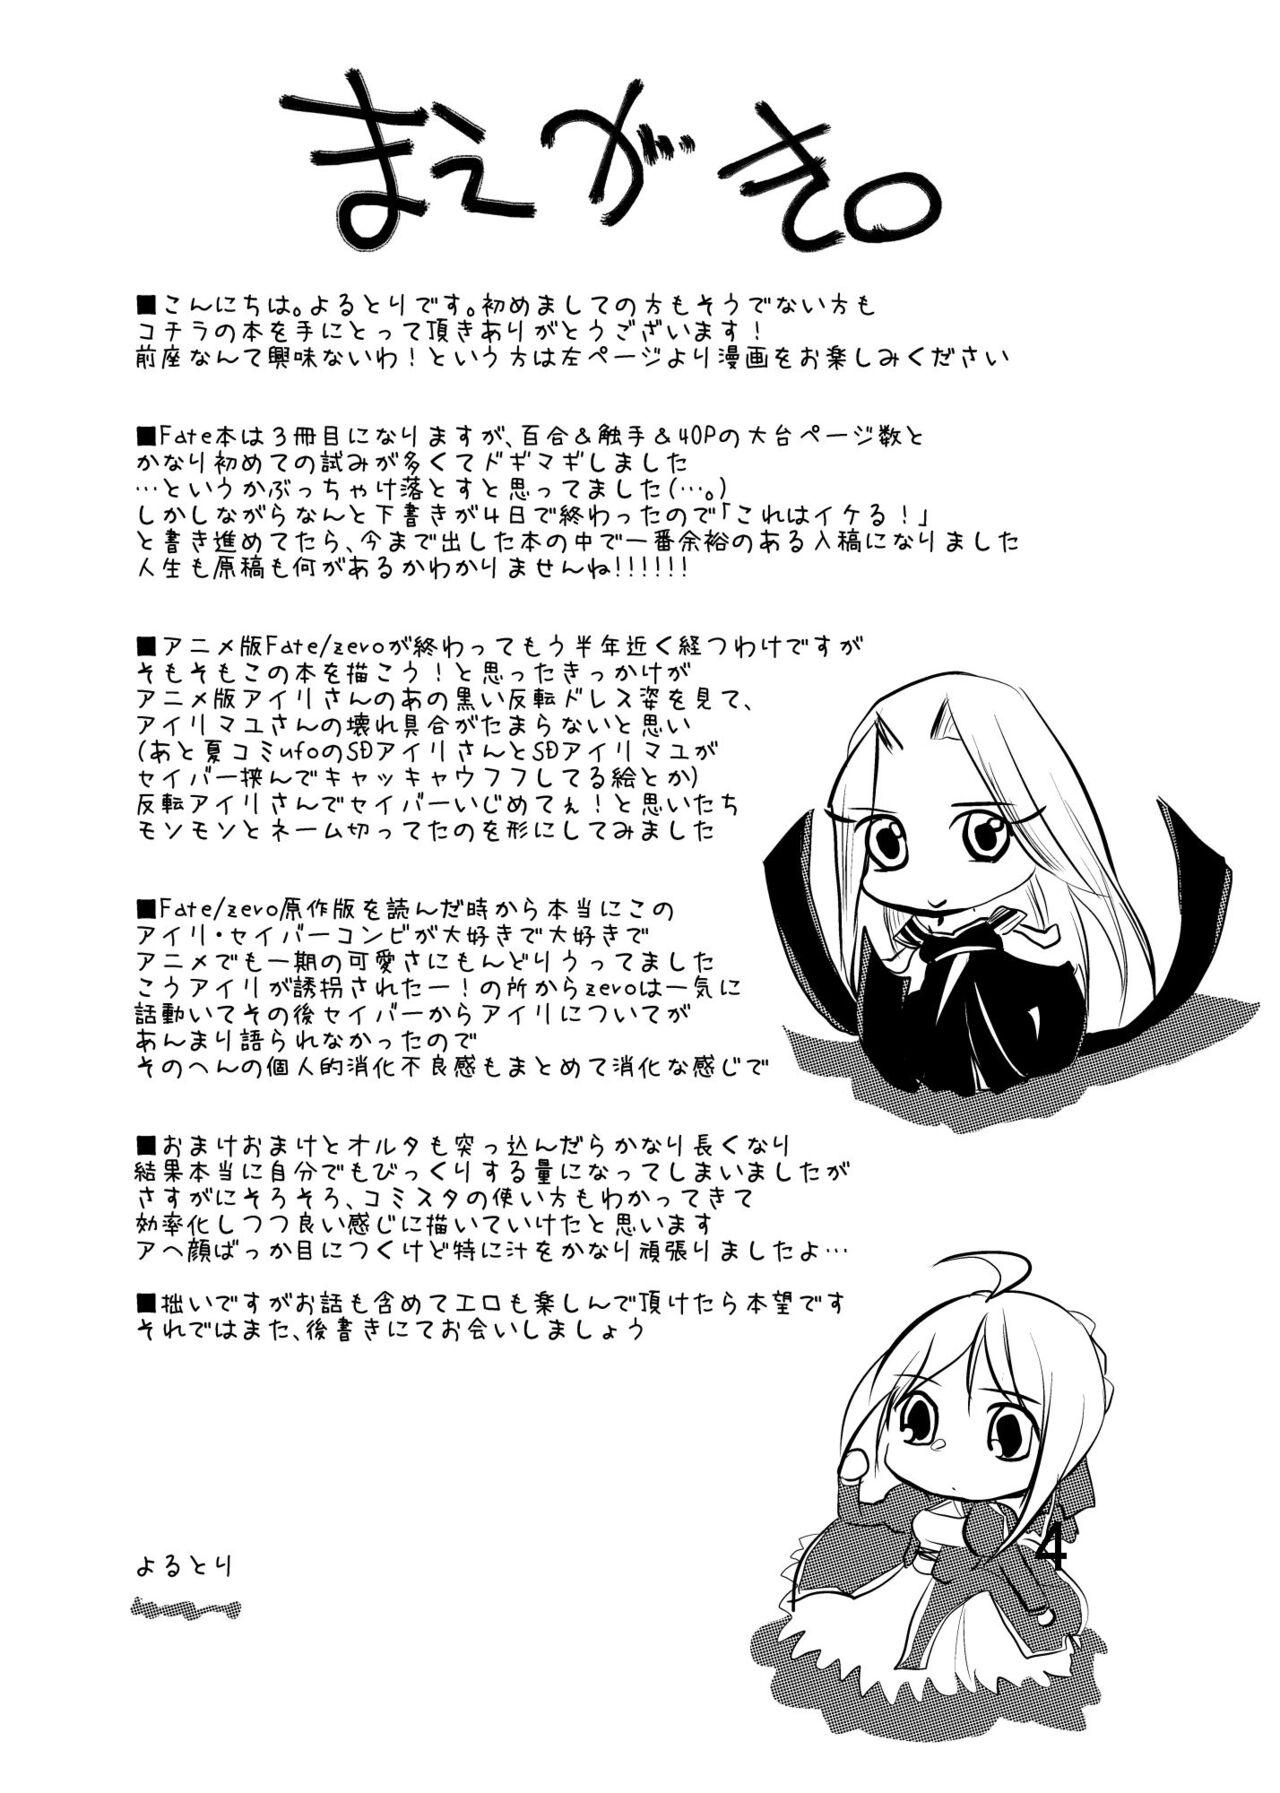 Cameltoe Daraku no Hana - Fate zero Salope - Page 3